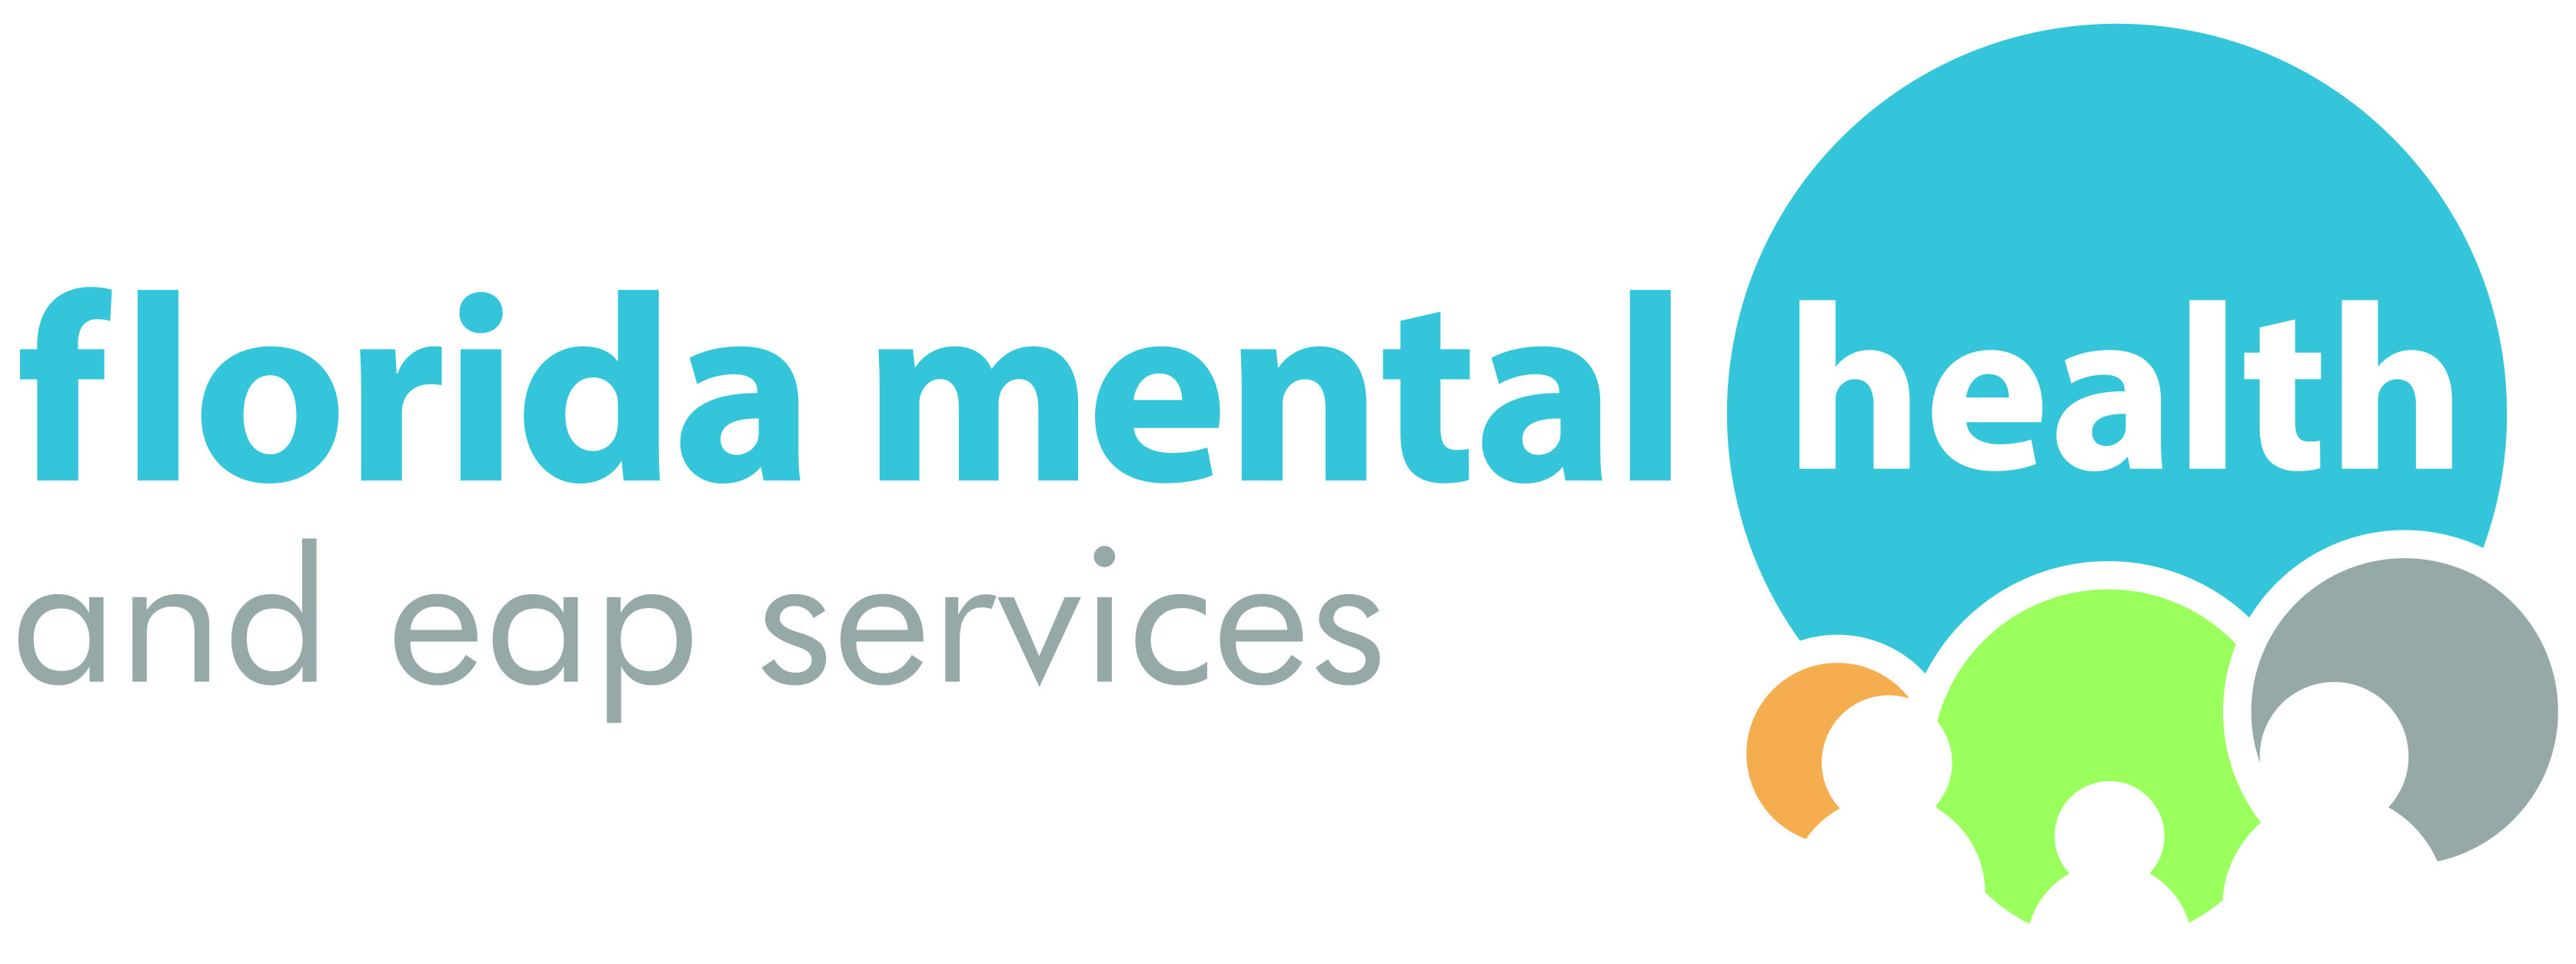 EAP Logo - Florida Mental Health & EAP Services Logo - Florida Mental Health ...